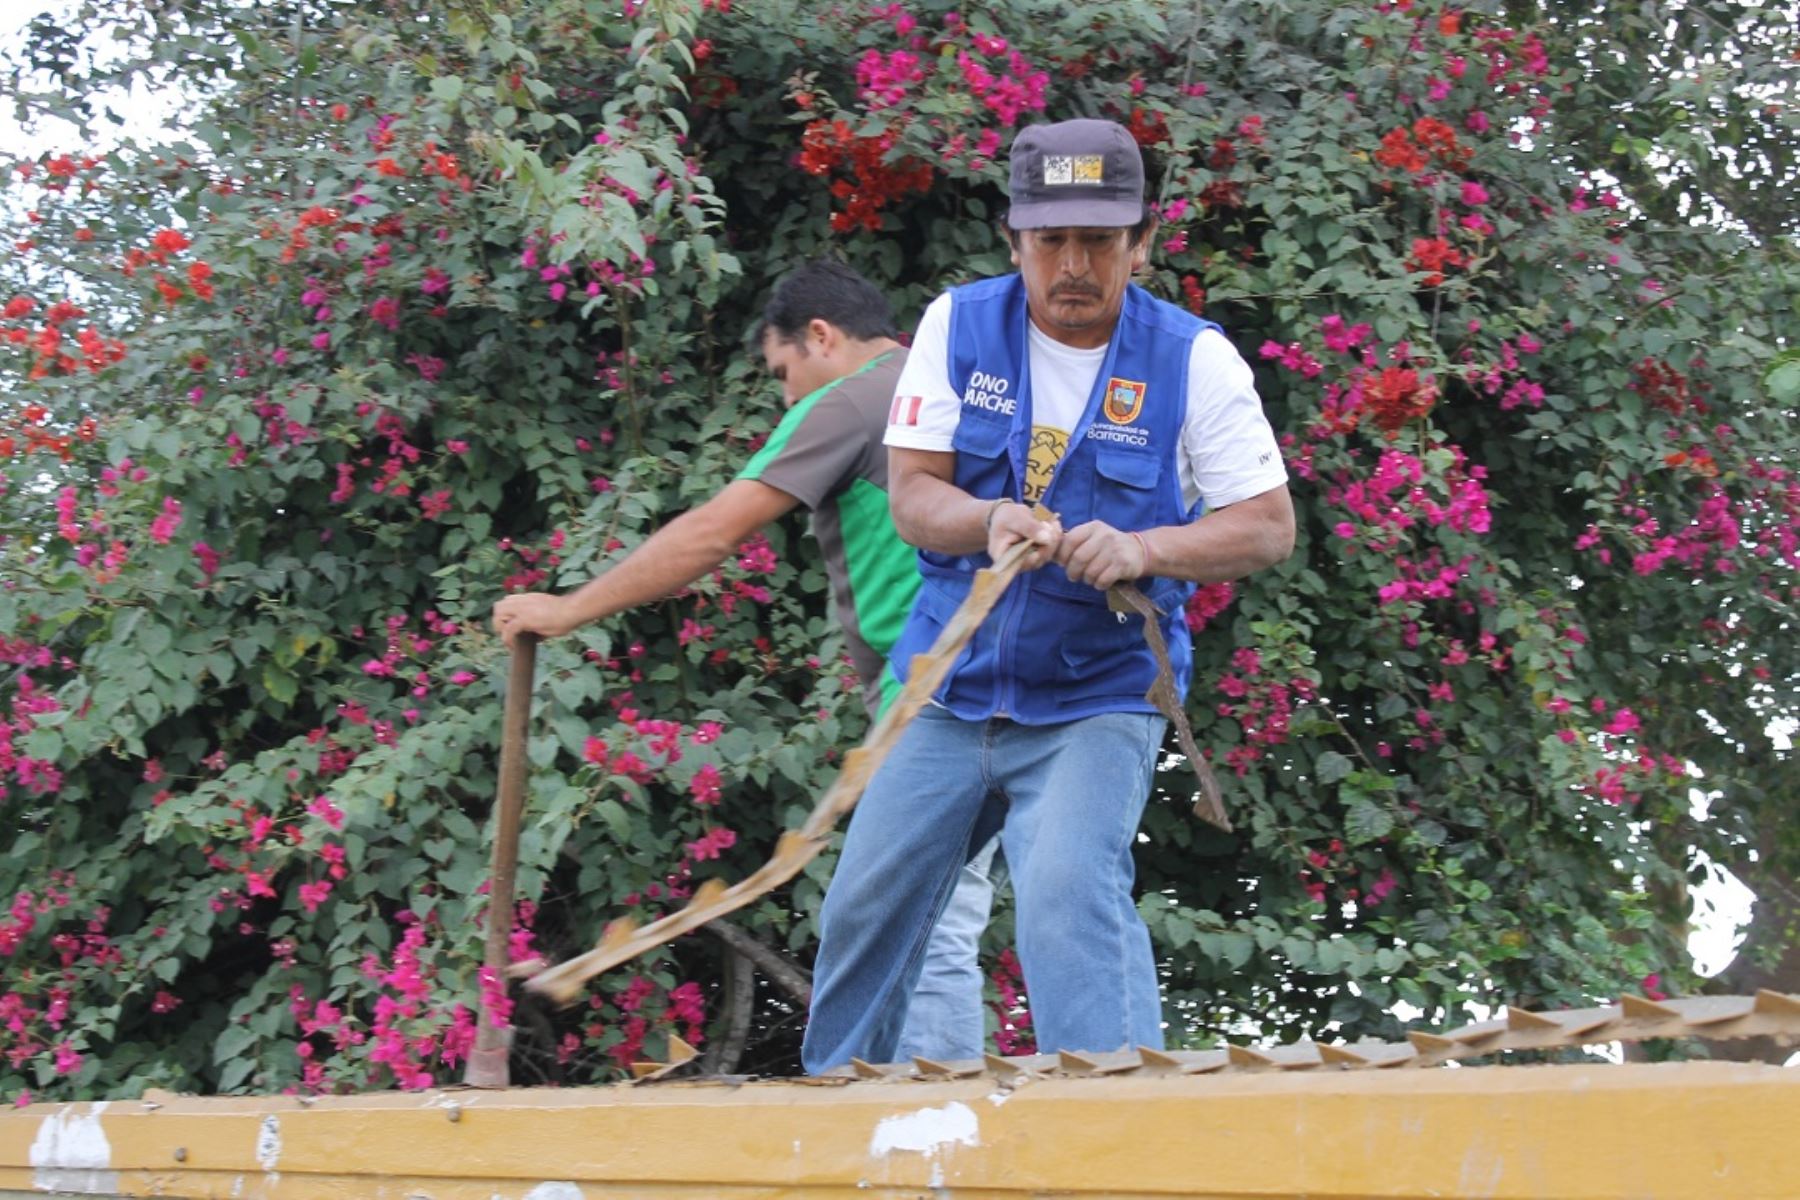 Personal del Municipio de Barranco retira peligrosas púas colocadas en escaleras de parques que amenazaban la vida de vecinos y peatones.